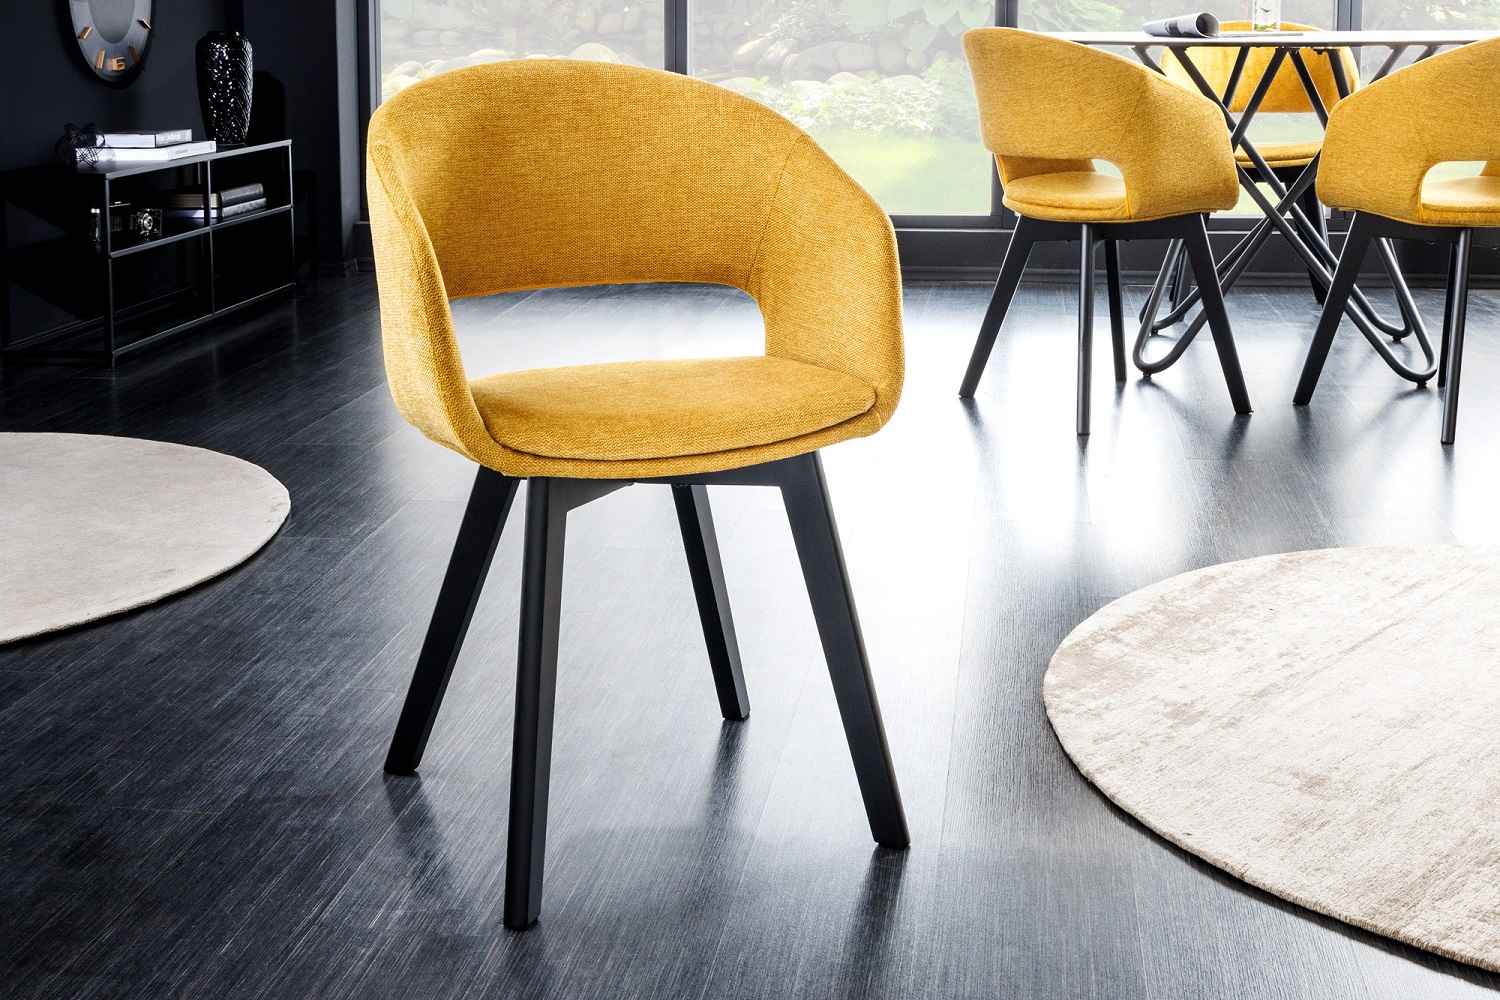 LuxD Designová židle Colby hořčicová žlutá